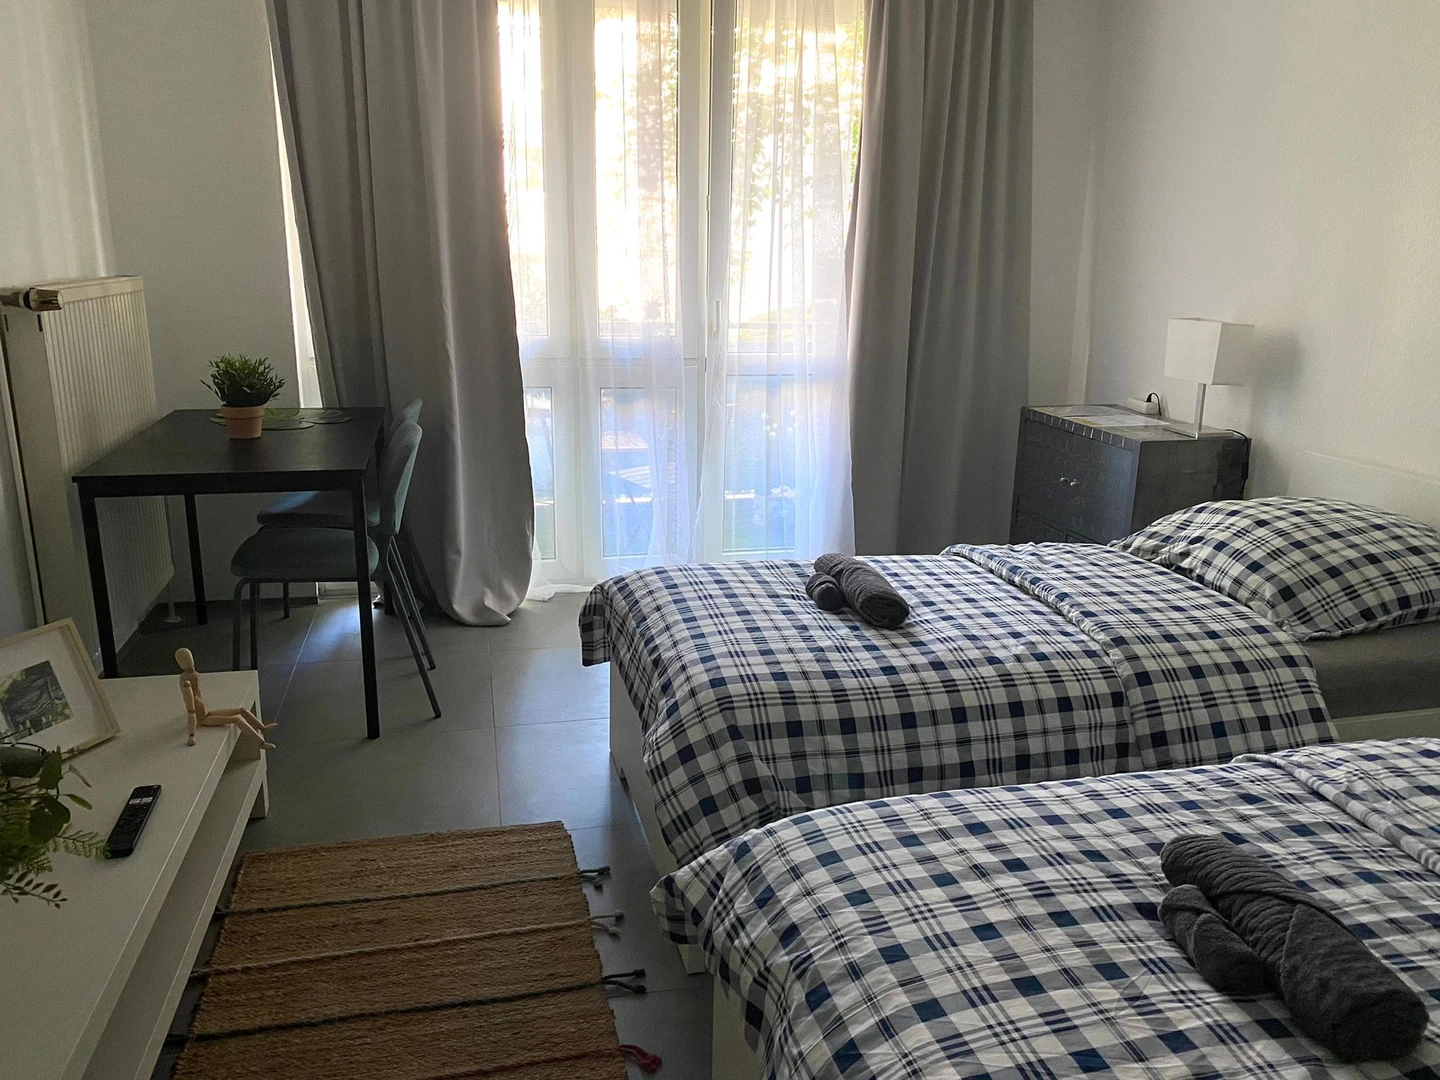 Hannover de çift kişilik yataklı kiralık oda